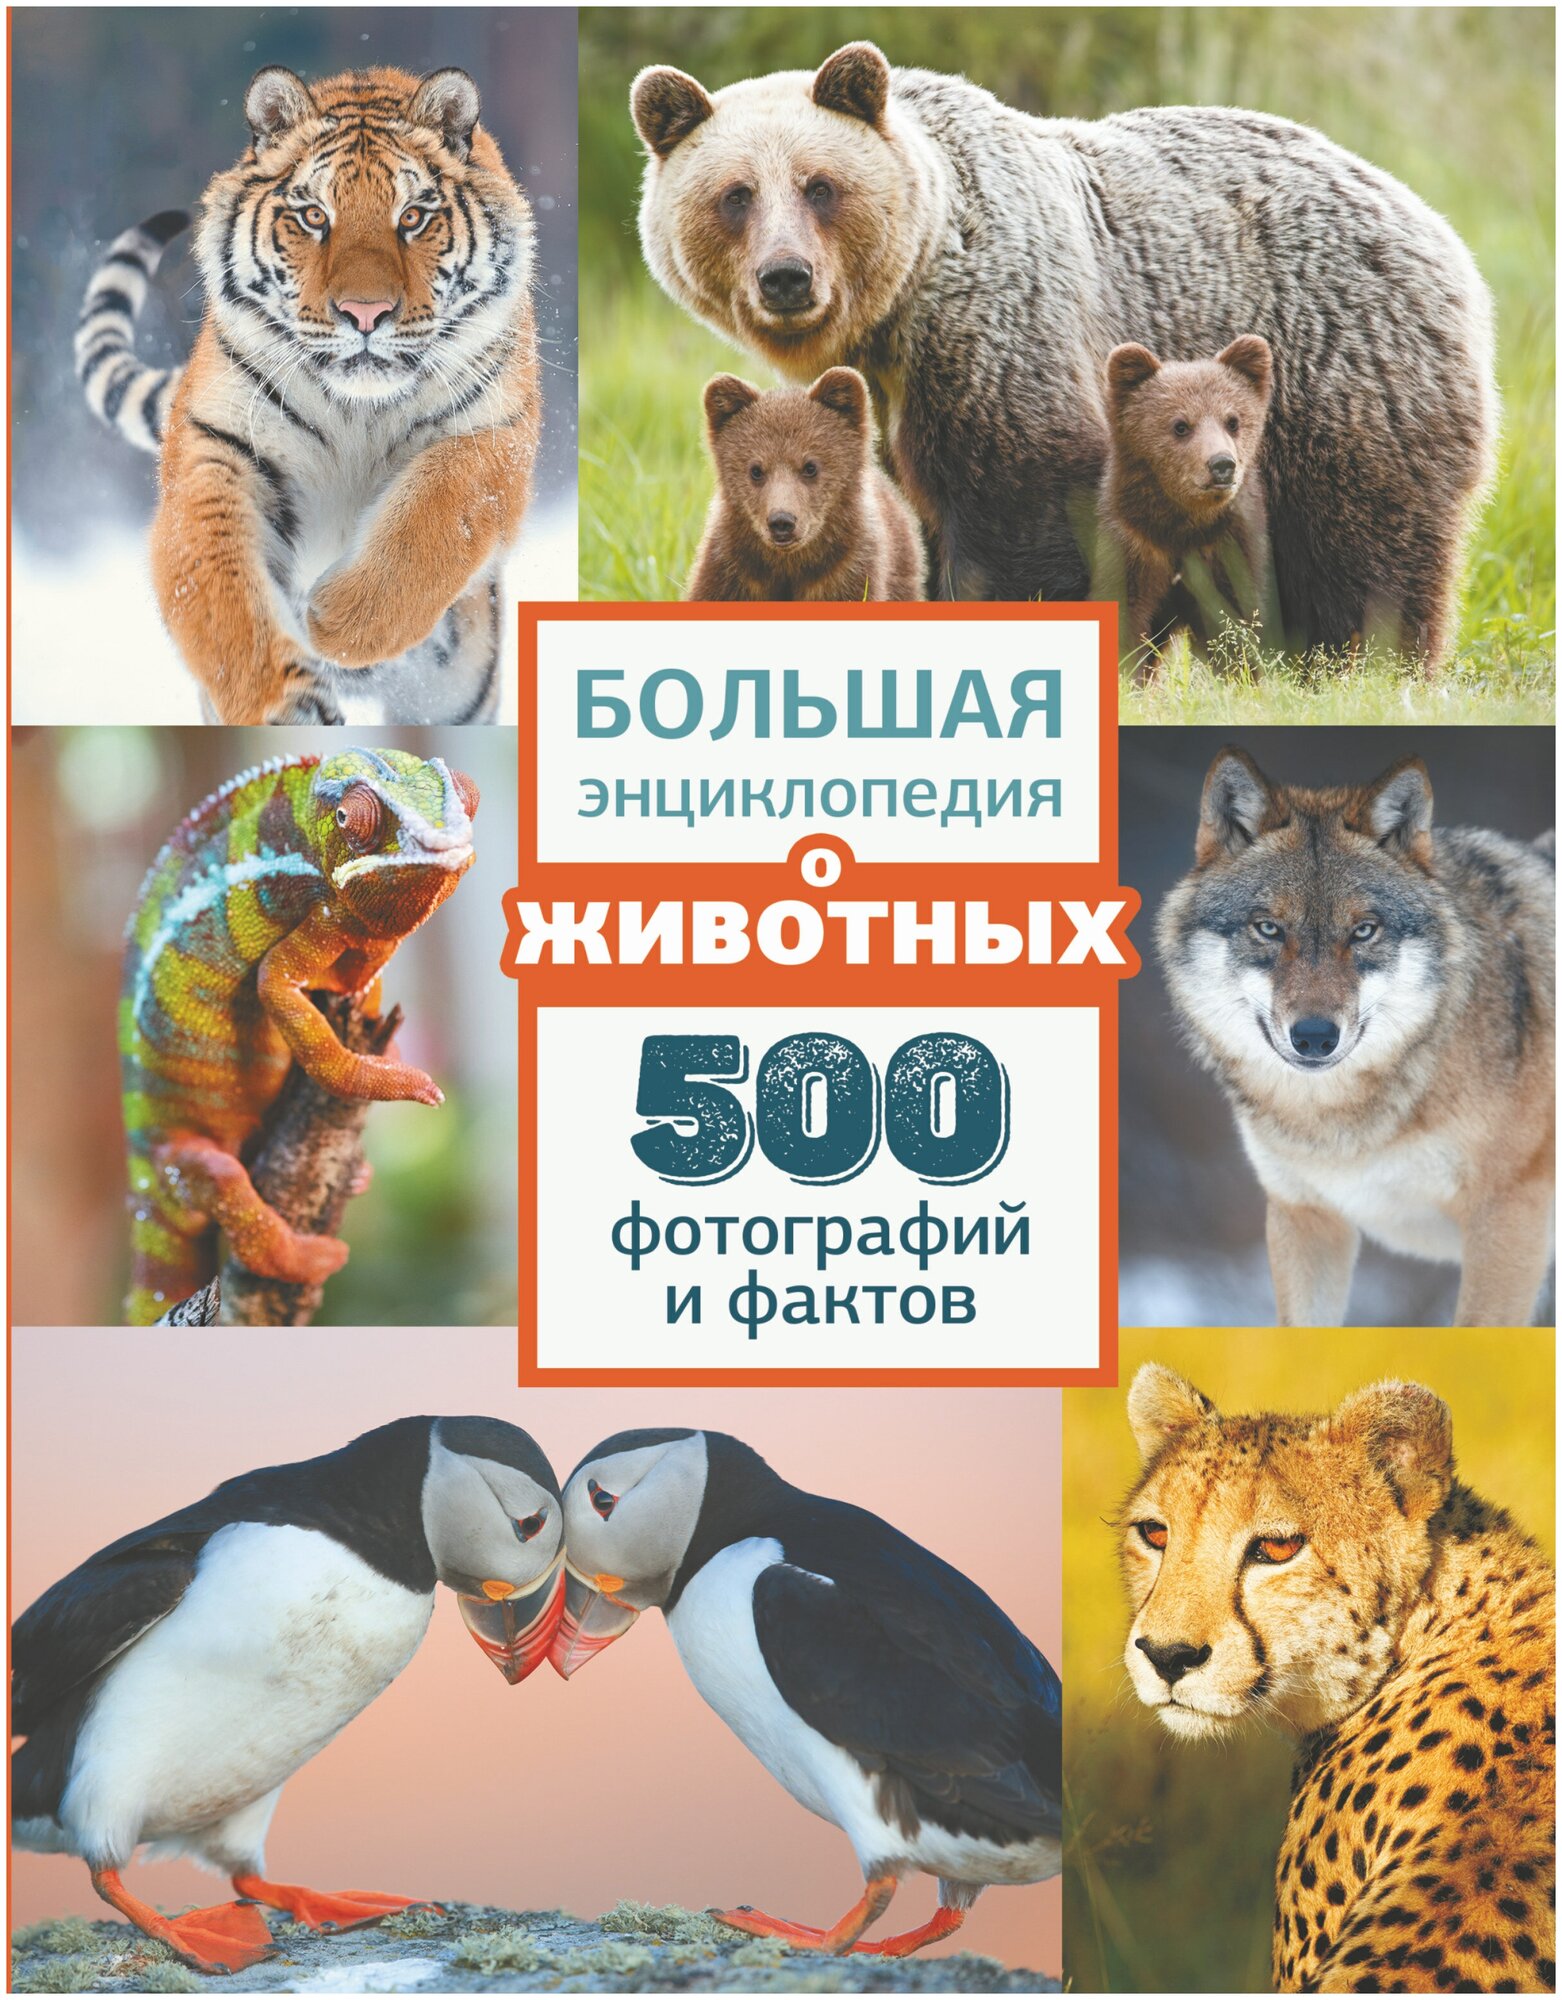 Большая энциклопедия о животных. 500 фотографий и фактов .